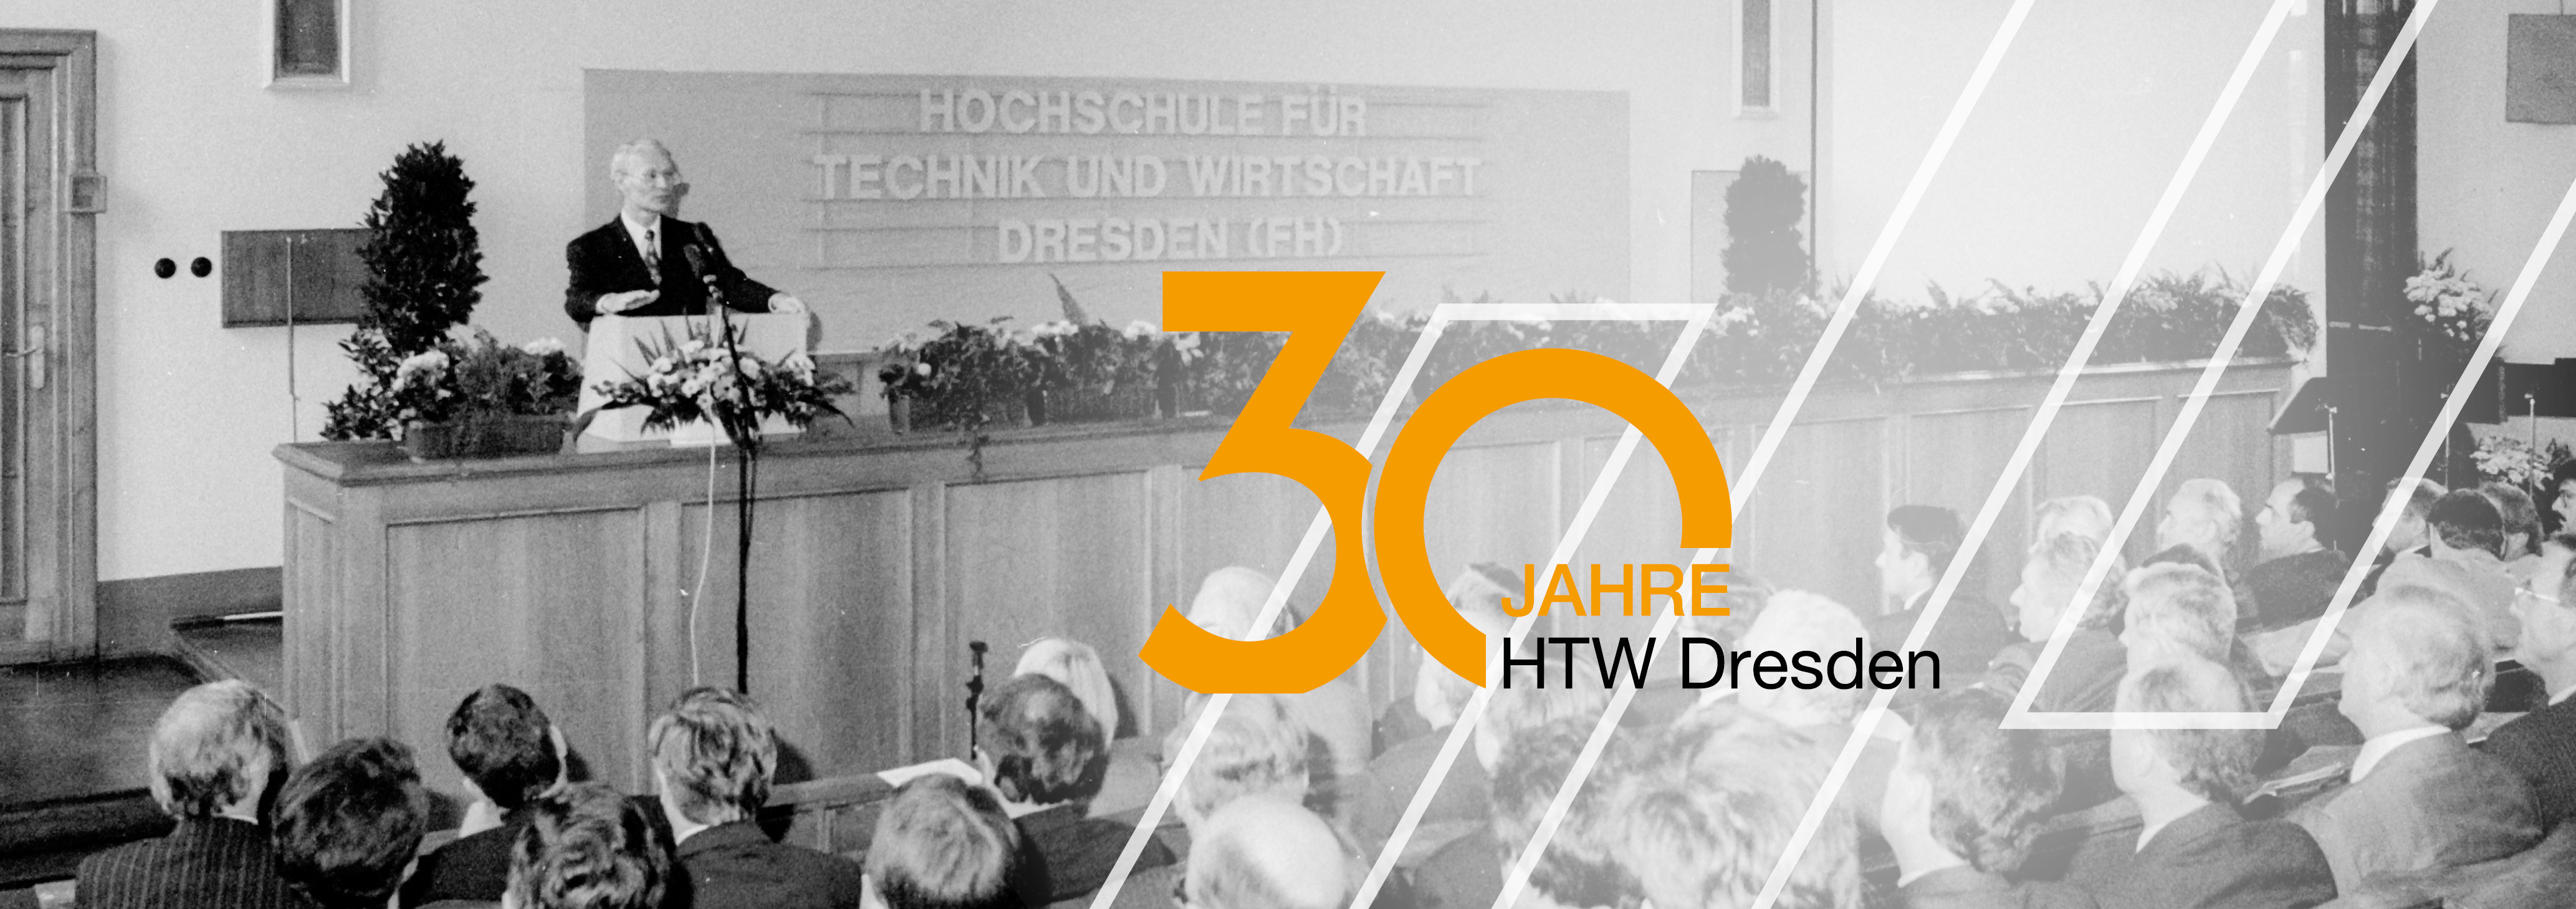 Die erste Immatrikulationsveranstaltungen der HTW Dresden mit dem Signet 30 Jahre